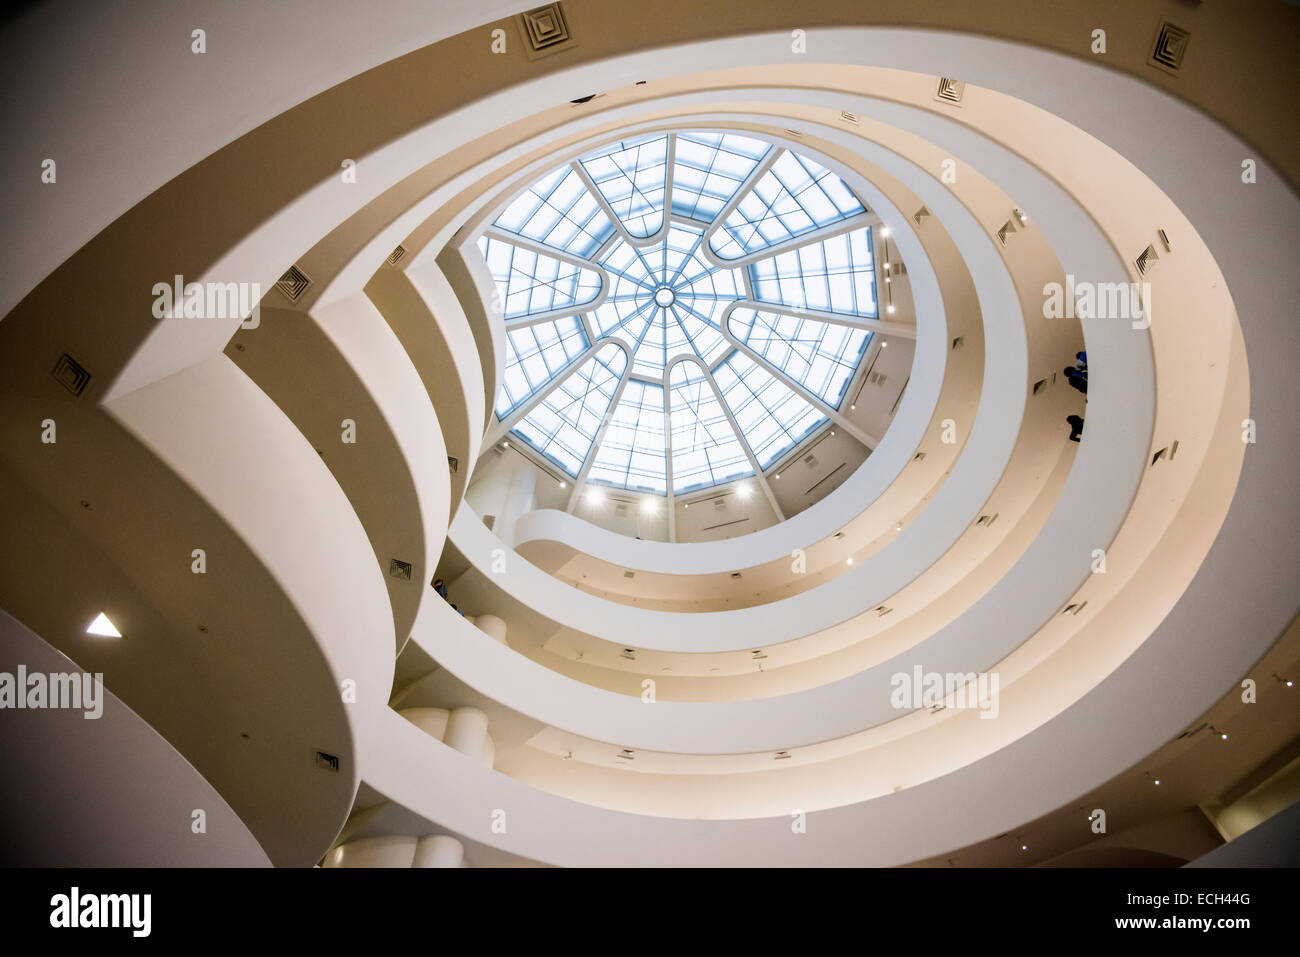 Guggenheim Museum, Manhattan, New York, United States Stock Photo